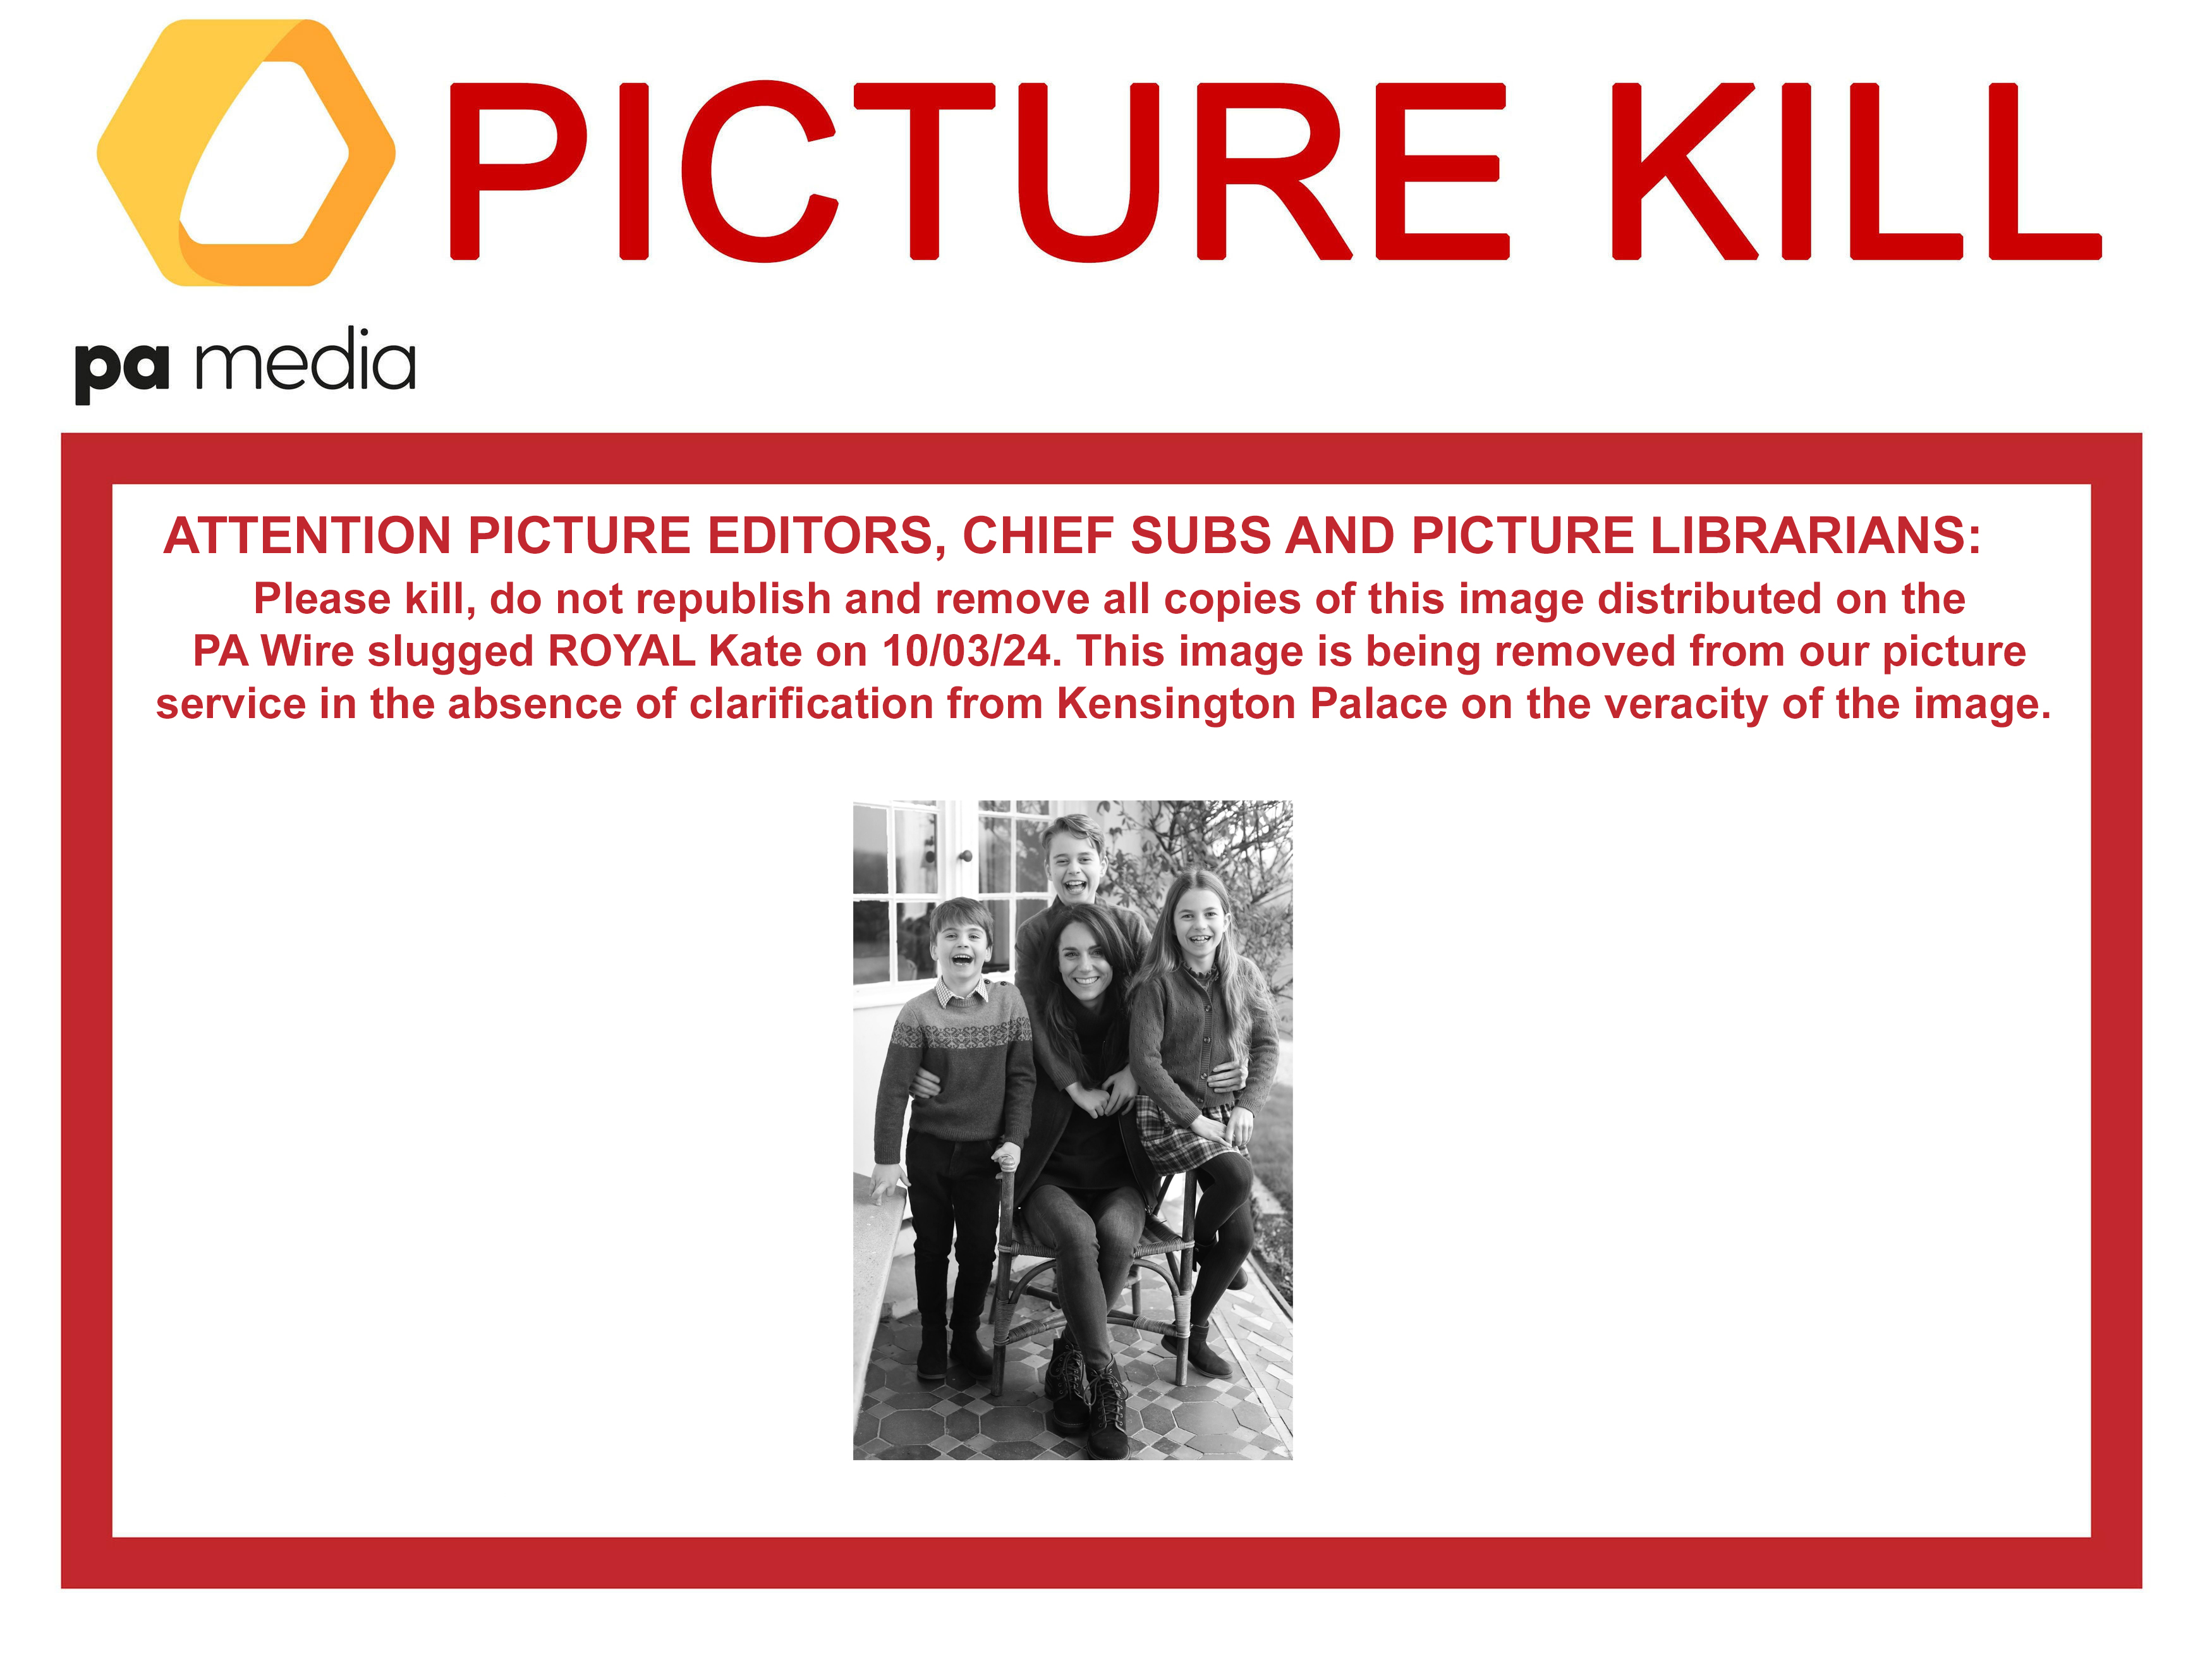 PA Media verschickte eine „Picture Kill“-Mitteilung an die Medienunternehmen, die Nutzung des Schnappschusses einzustellen